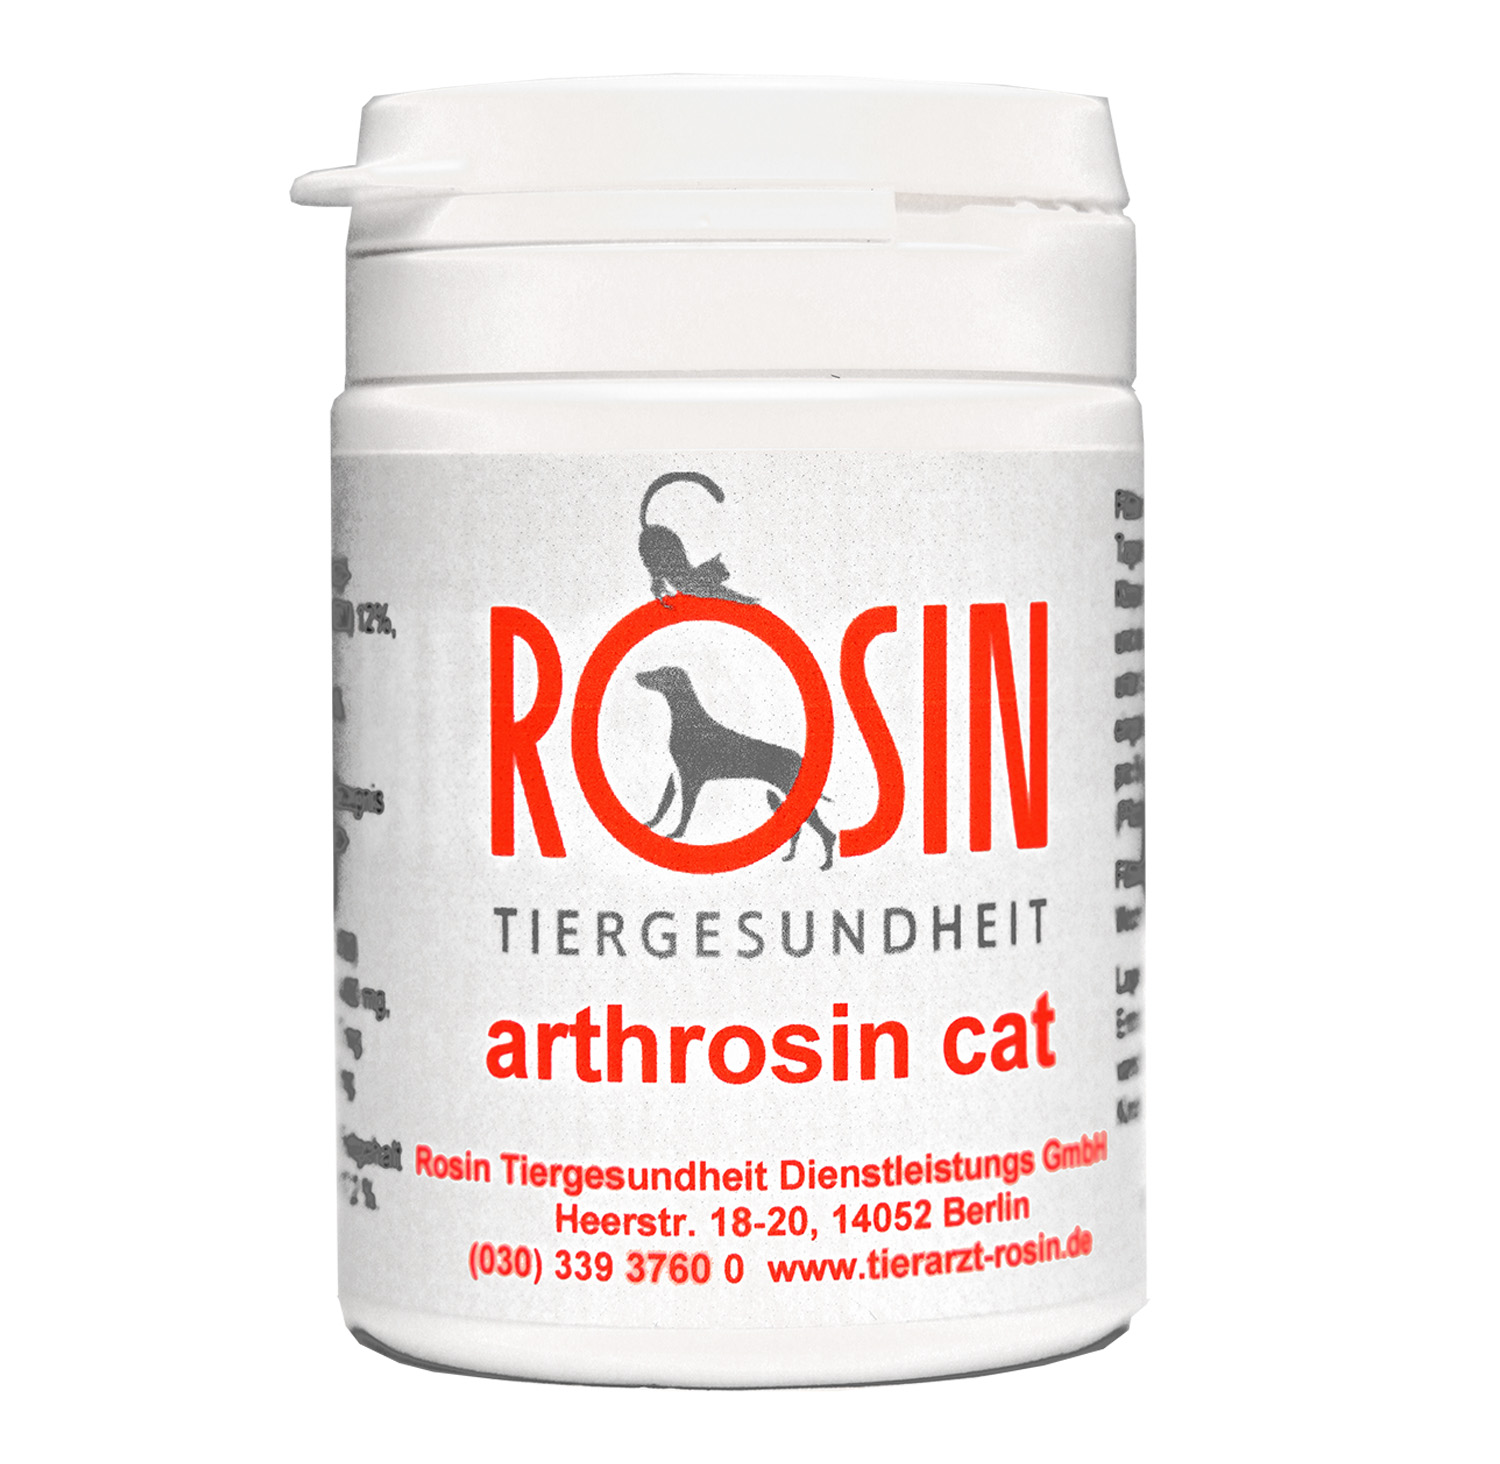 Tierarzt Rosin - Rosin Tiergesundheit - arthrosin cat 60 Tabletten - Ergänzungsfuttermittel zur Unterstützung der Gelenksgesundheit für Katzen